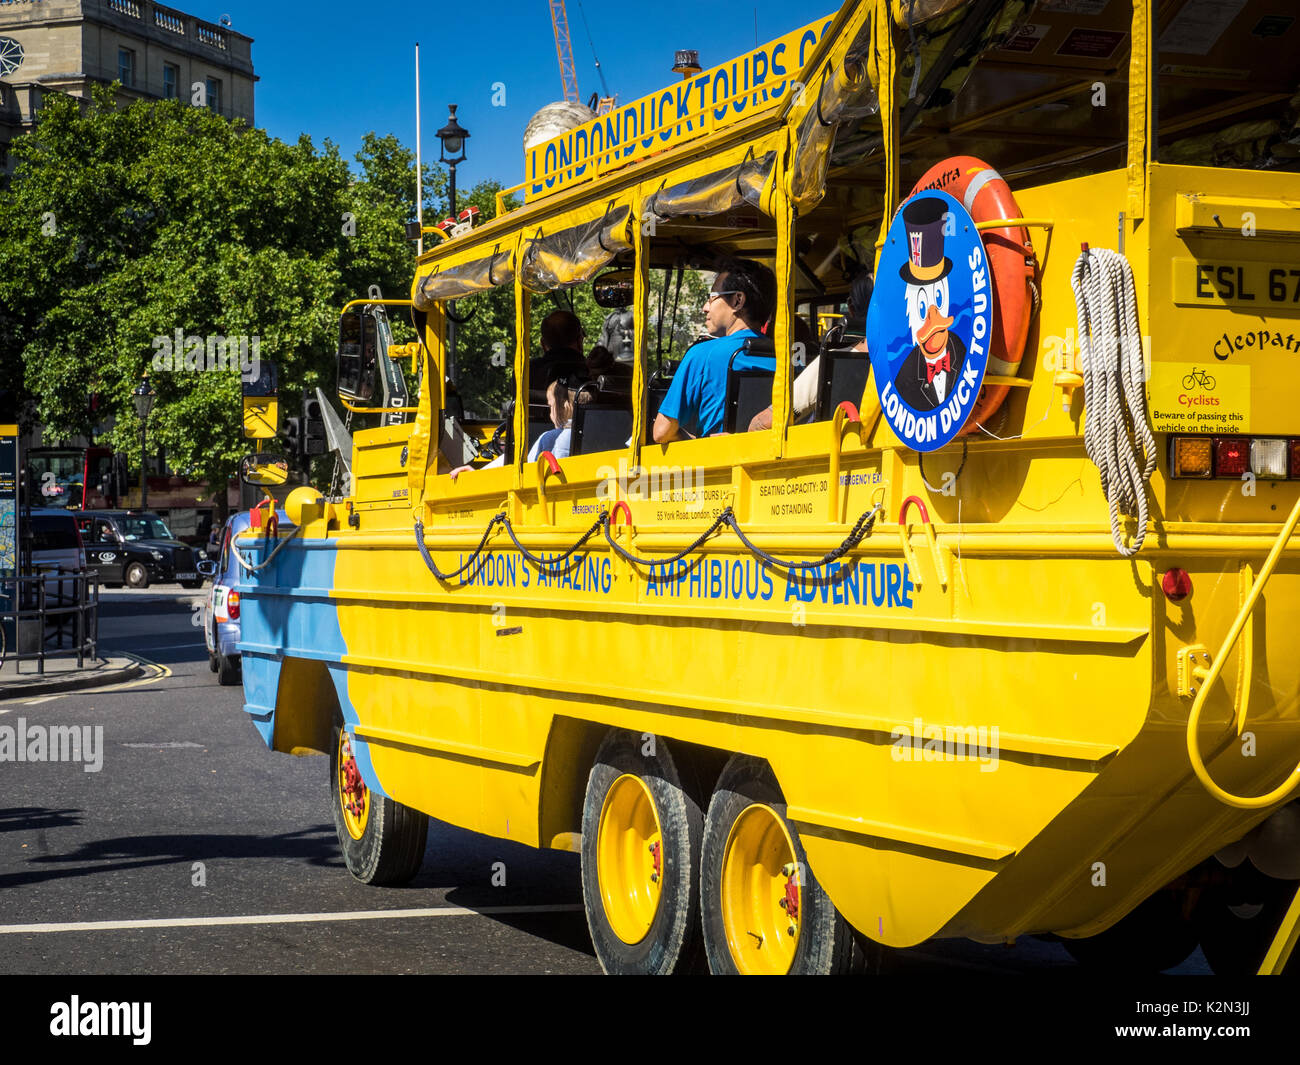 Londra DUKW Duck trasporto turistico, un bus anfibio che porta i turisti su un viaggio in giro per le strade di Londra e sulla RiverThames. Foto Stock